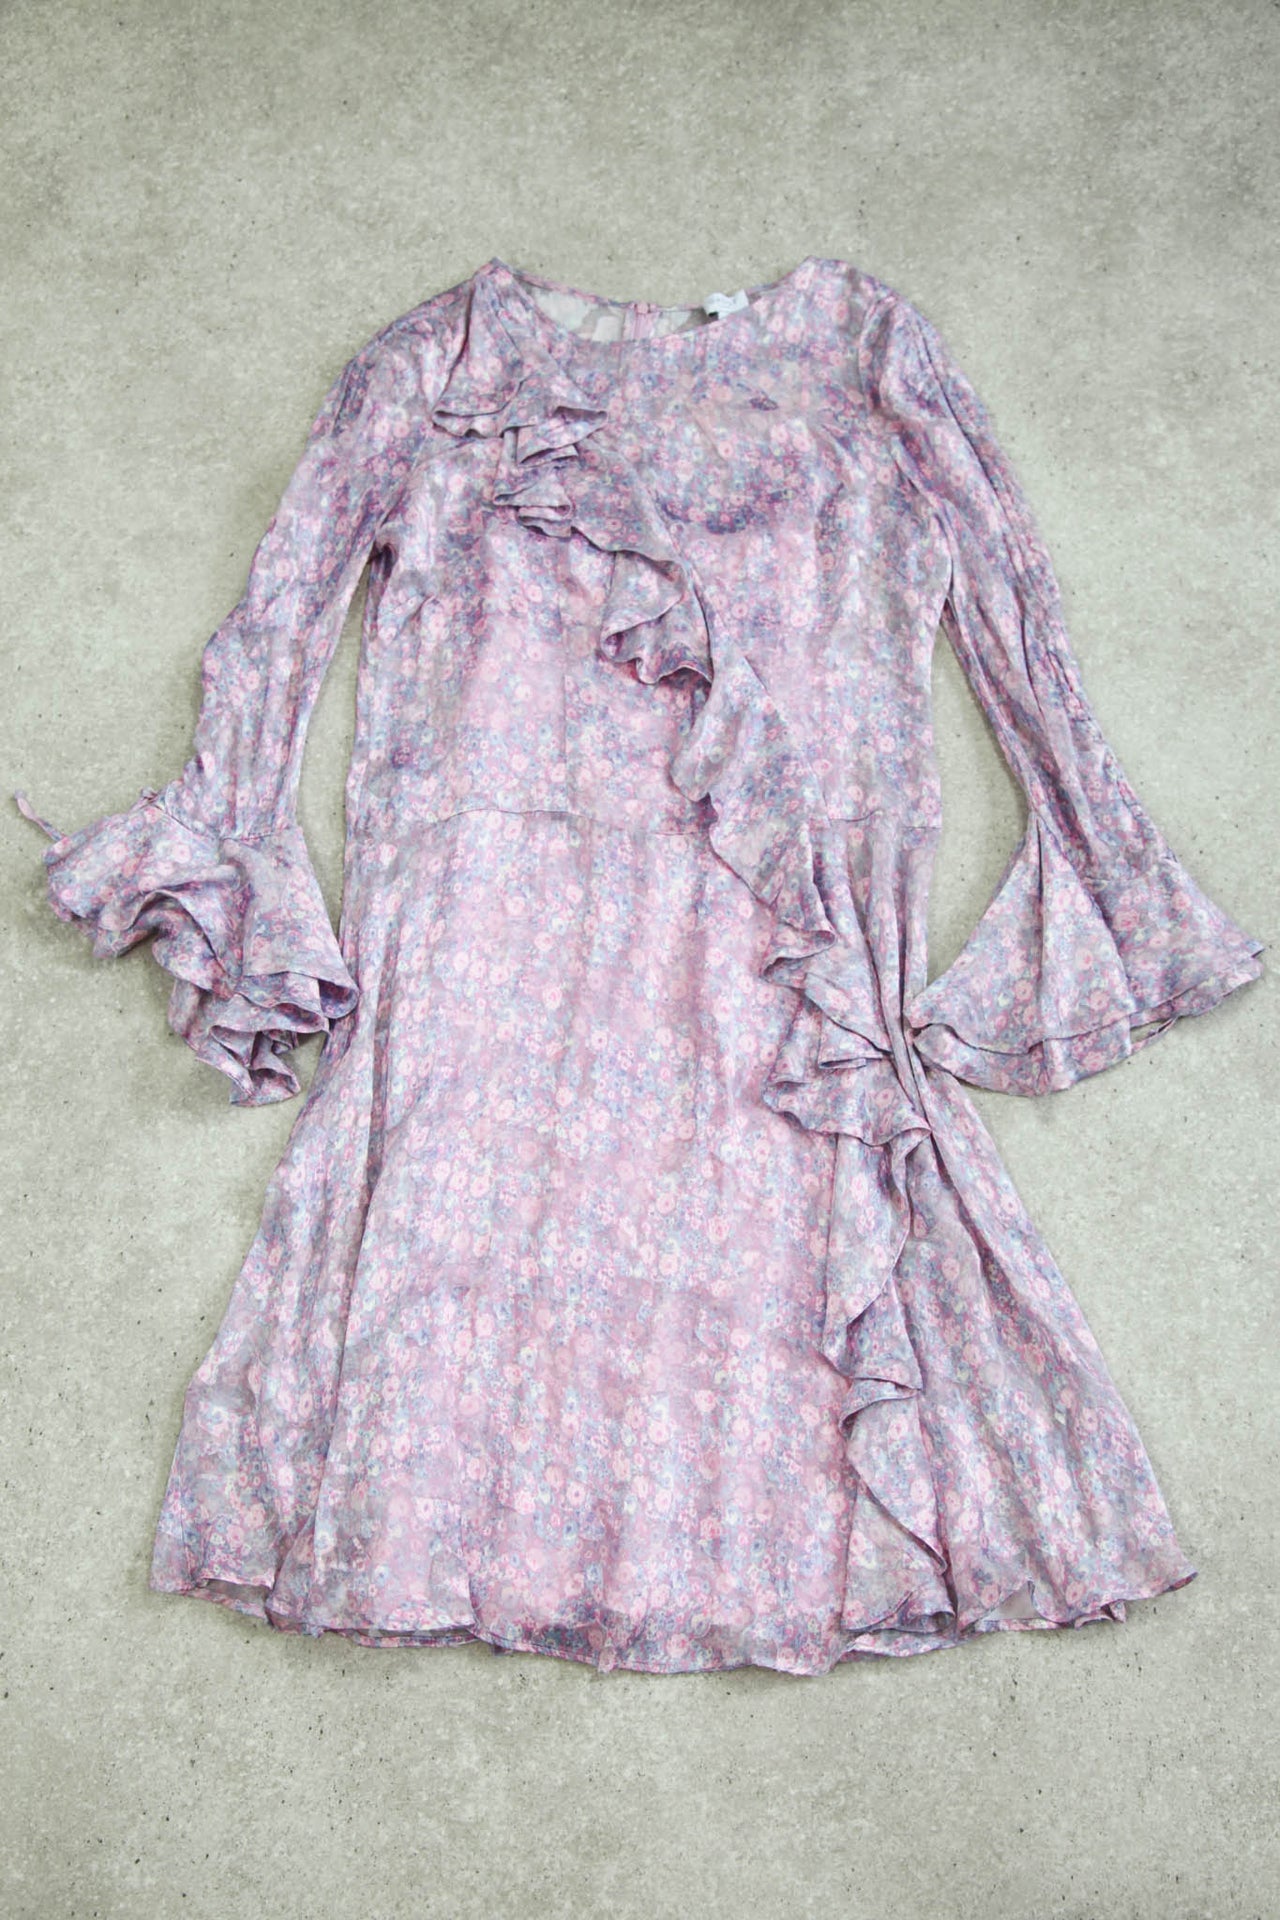 BNWT Ghost Floral Ruffle Pink & Purple Dress (L/XL)